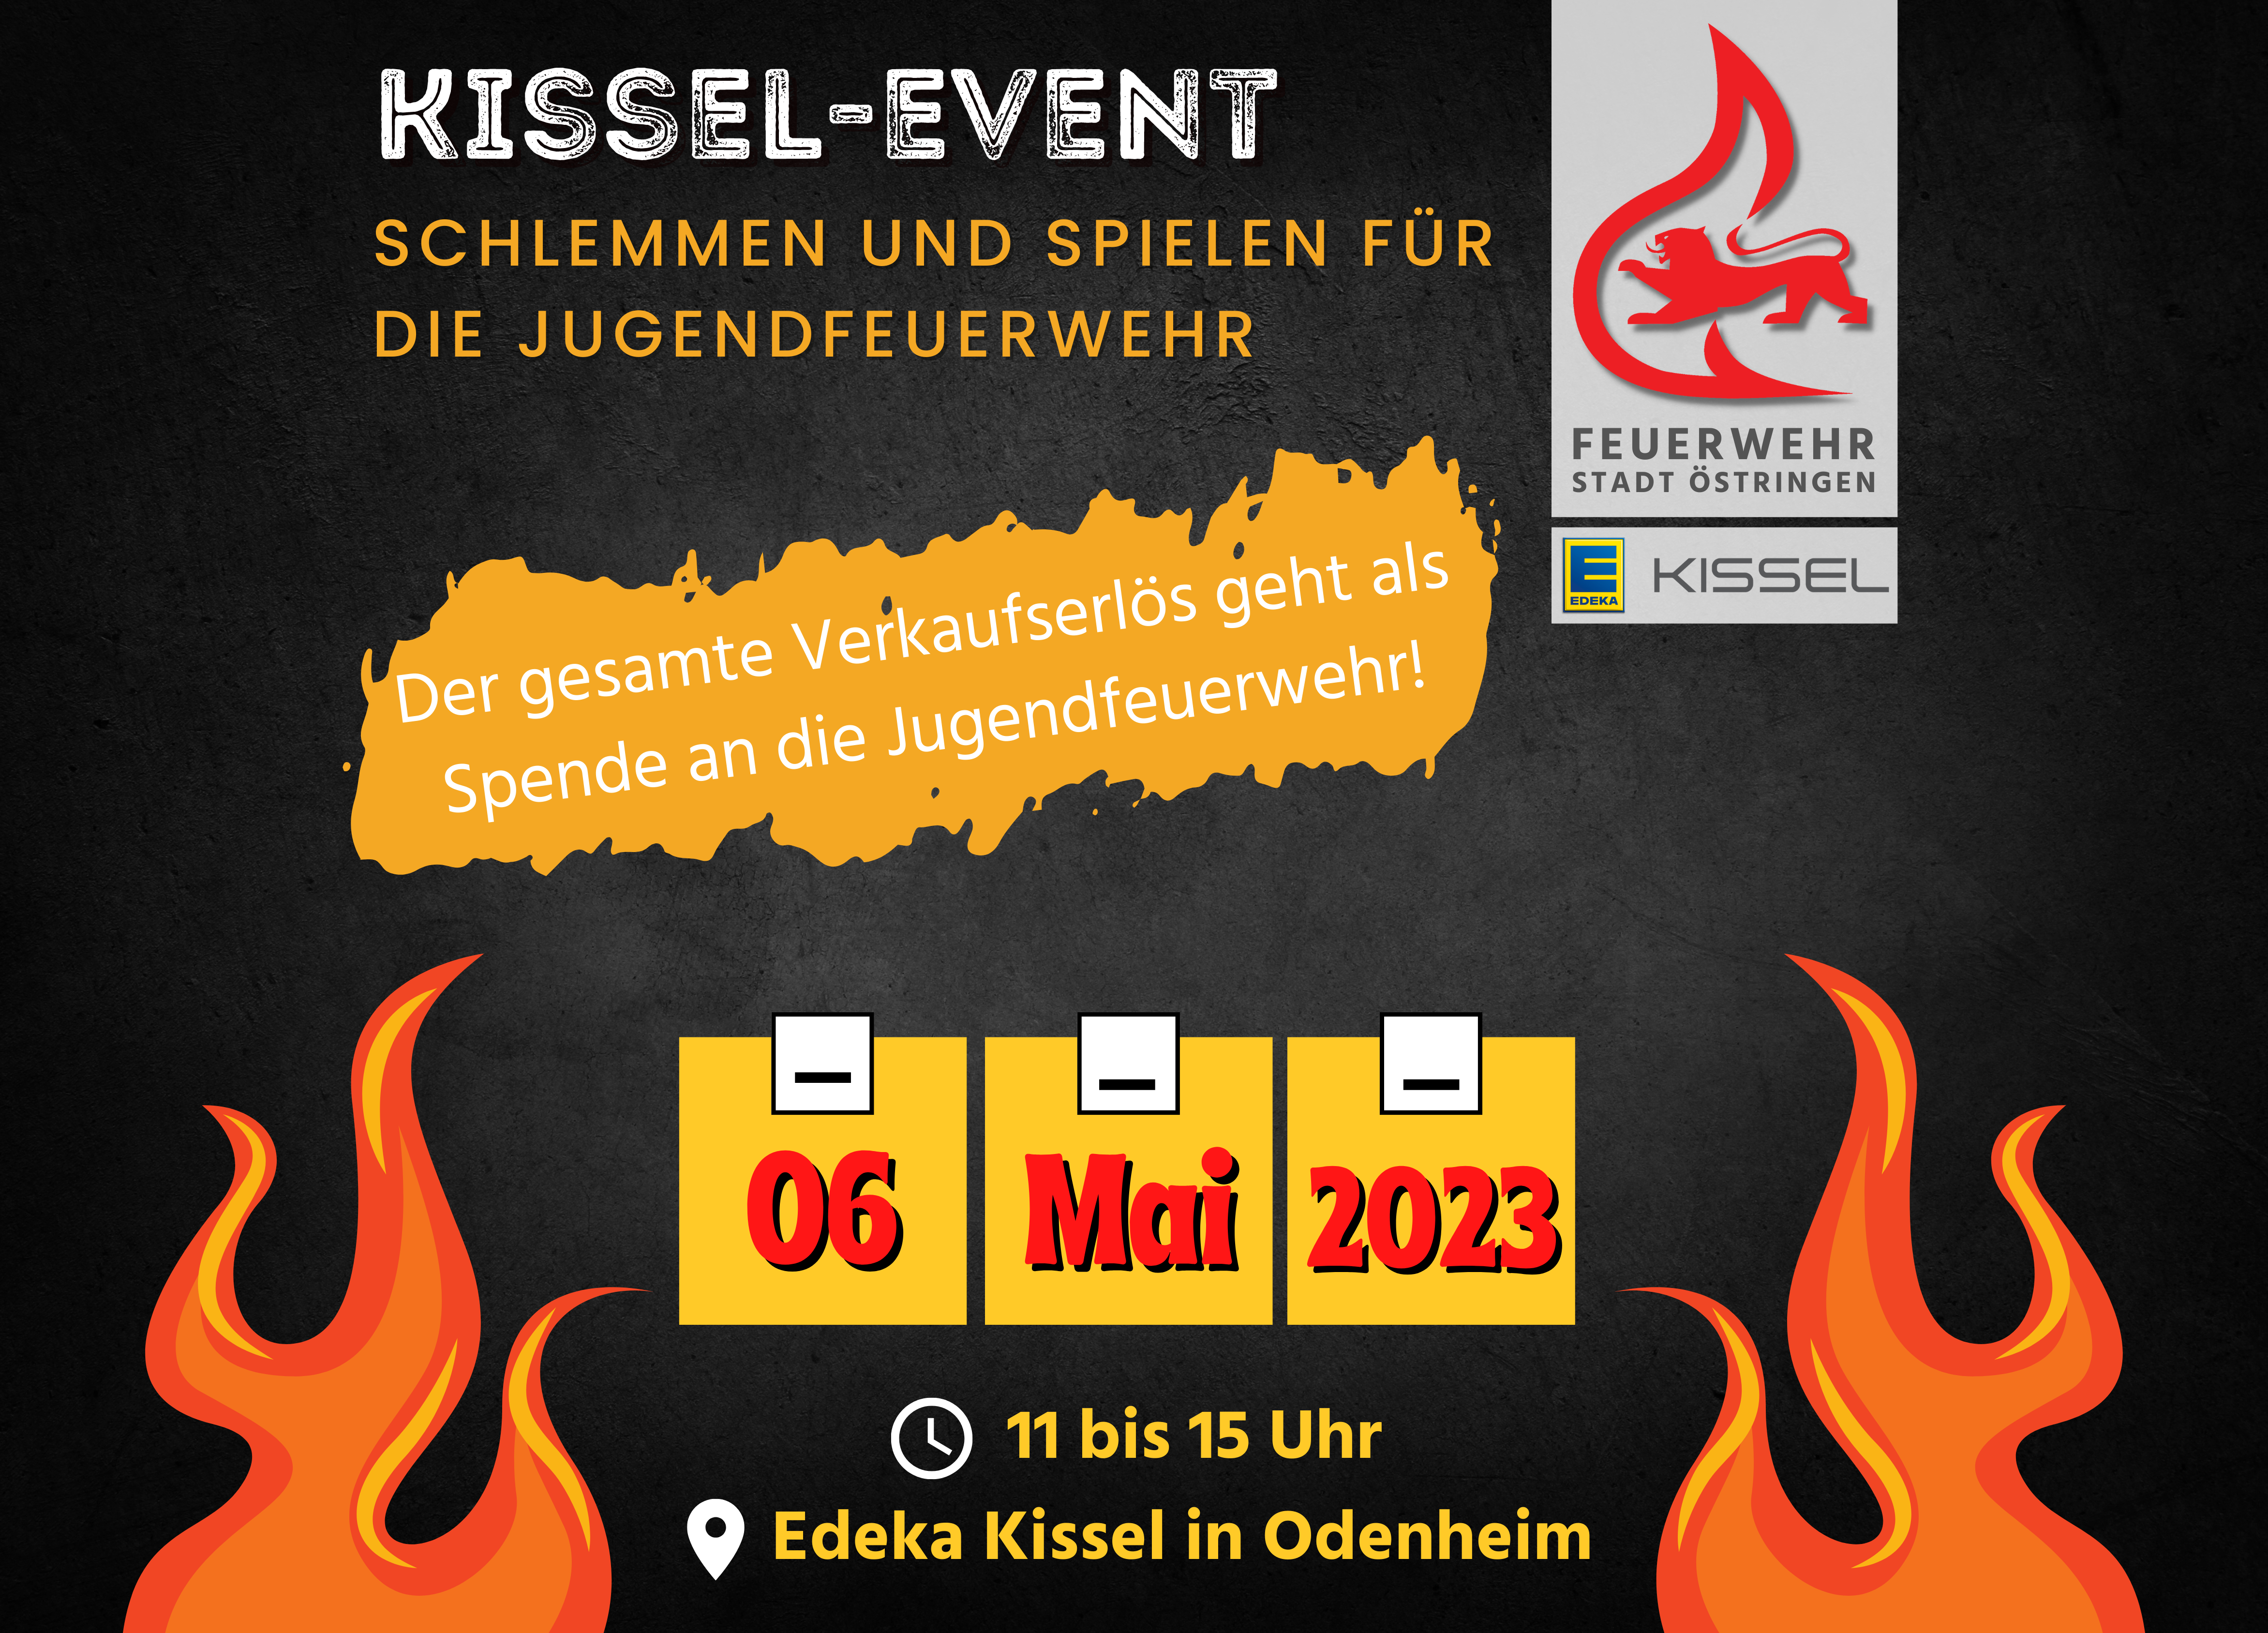 Gemeinsame Aktion von Jugendfeuerwehr und Edeka Kissel Odenheim